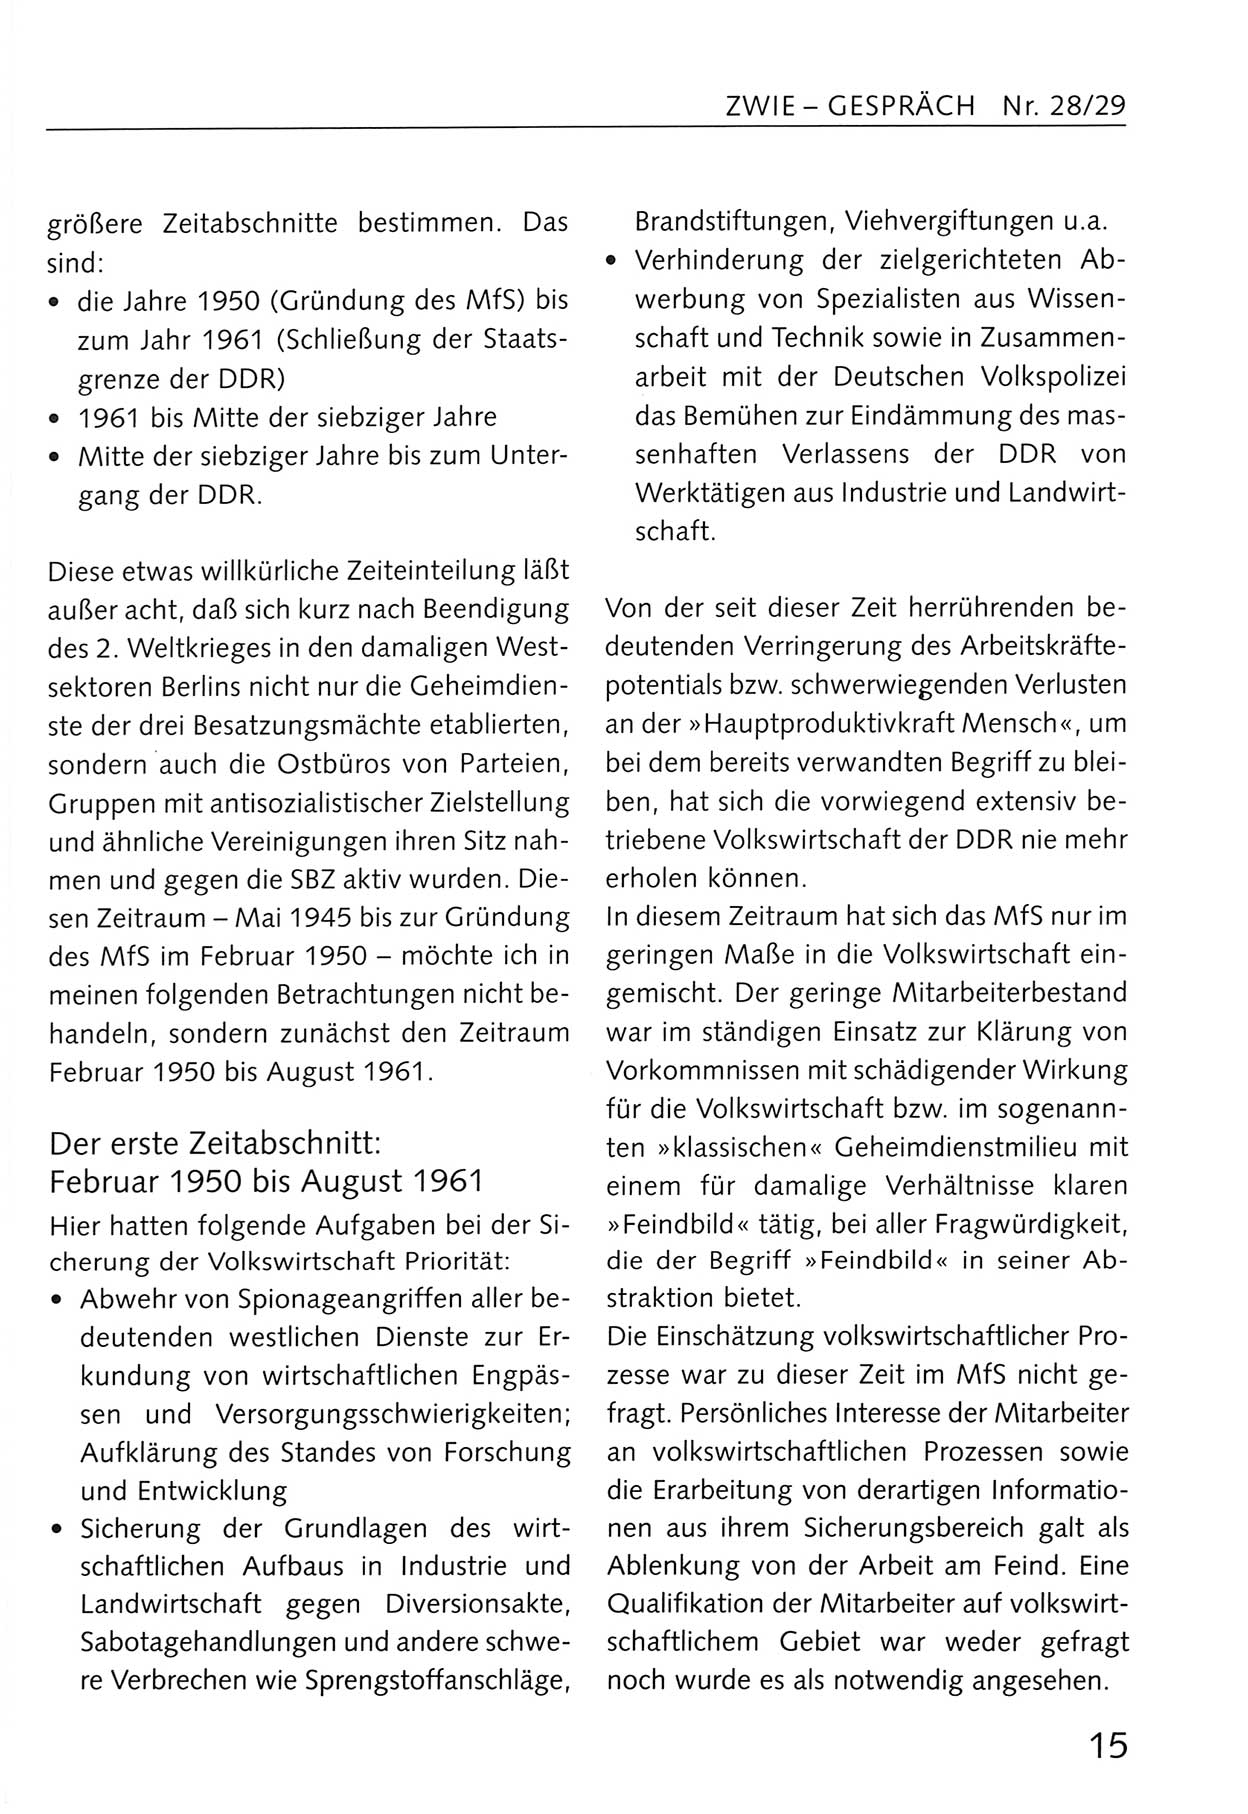 Zwie-Gespräch, Beiträge zum Umgang mit der Staatssicherheits-Vergangenheit [Deutsche Demokratische Republik (DDR)], Ausgabe Nr. 28/29, Berlin 1995, Seite 15 (Zwie-Gespr. Ausg. 28/29 1995, S. 15)